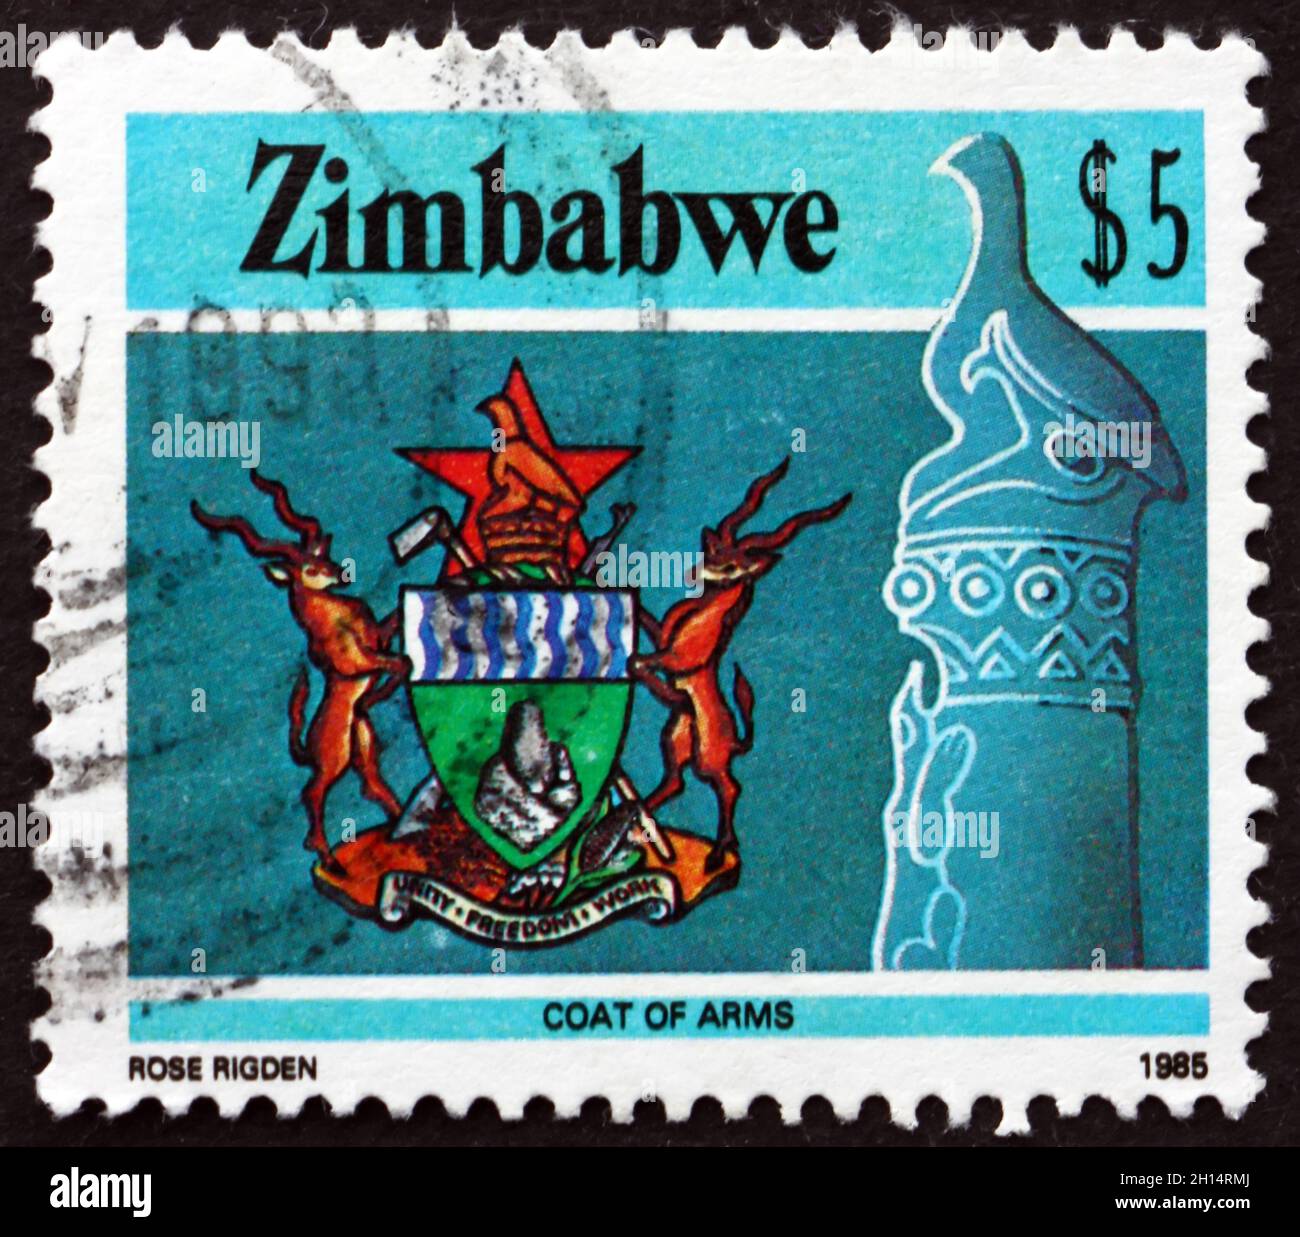 ZIMBABWE - VERS 1985: Un timbre imprimé au Zimbabwe montre l'oiseau du Zimbabwe et les armoiries nationales, vers 1985 Banque D'Images